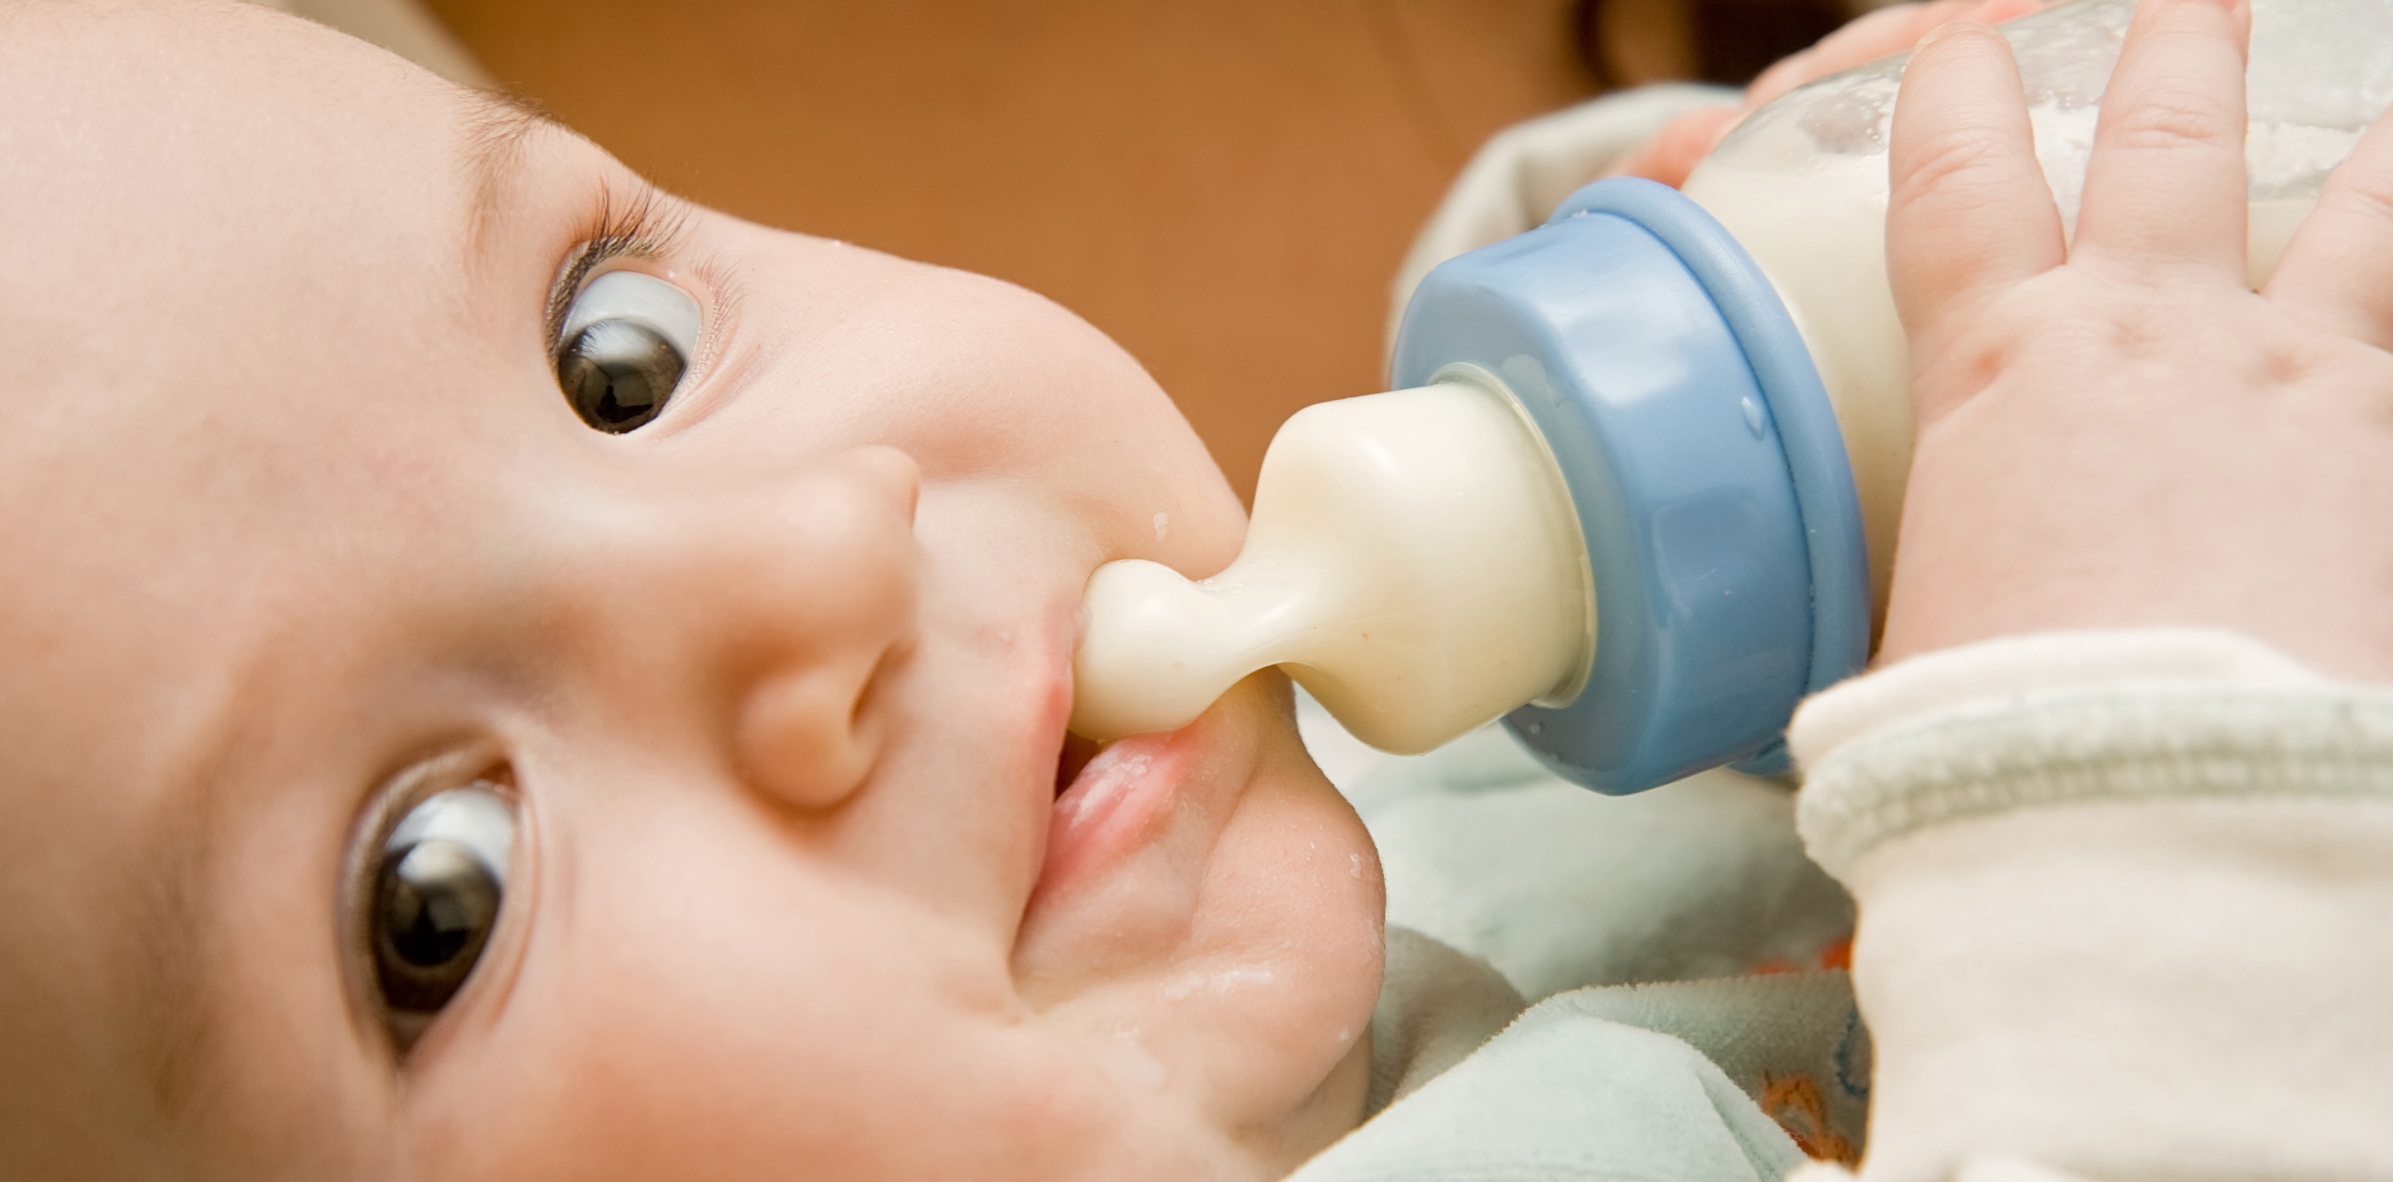 Bảo quản sữa là điều cực kỳ quan trọng để giữ cho sữa của bạn luôn trong tình trạng tốt nhất cho sức khỏe của bé yêu. Hãy xem hình ảnh liên quan đến từ khóa \